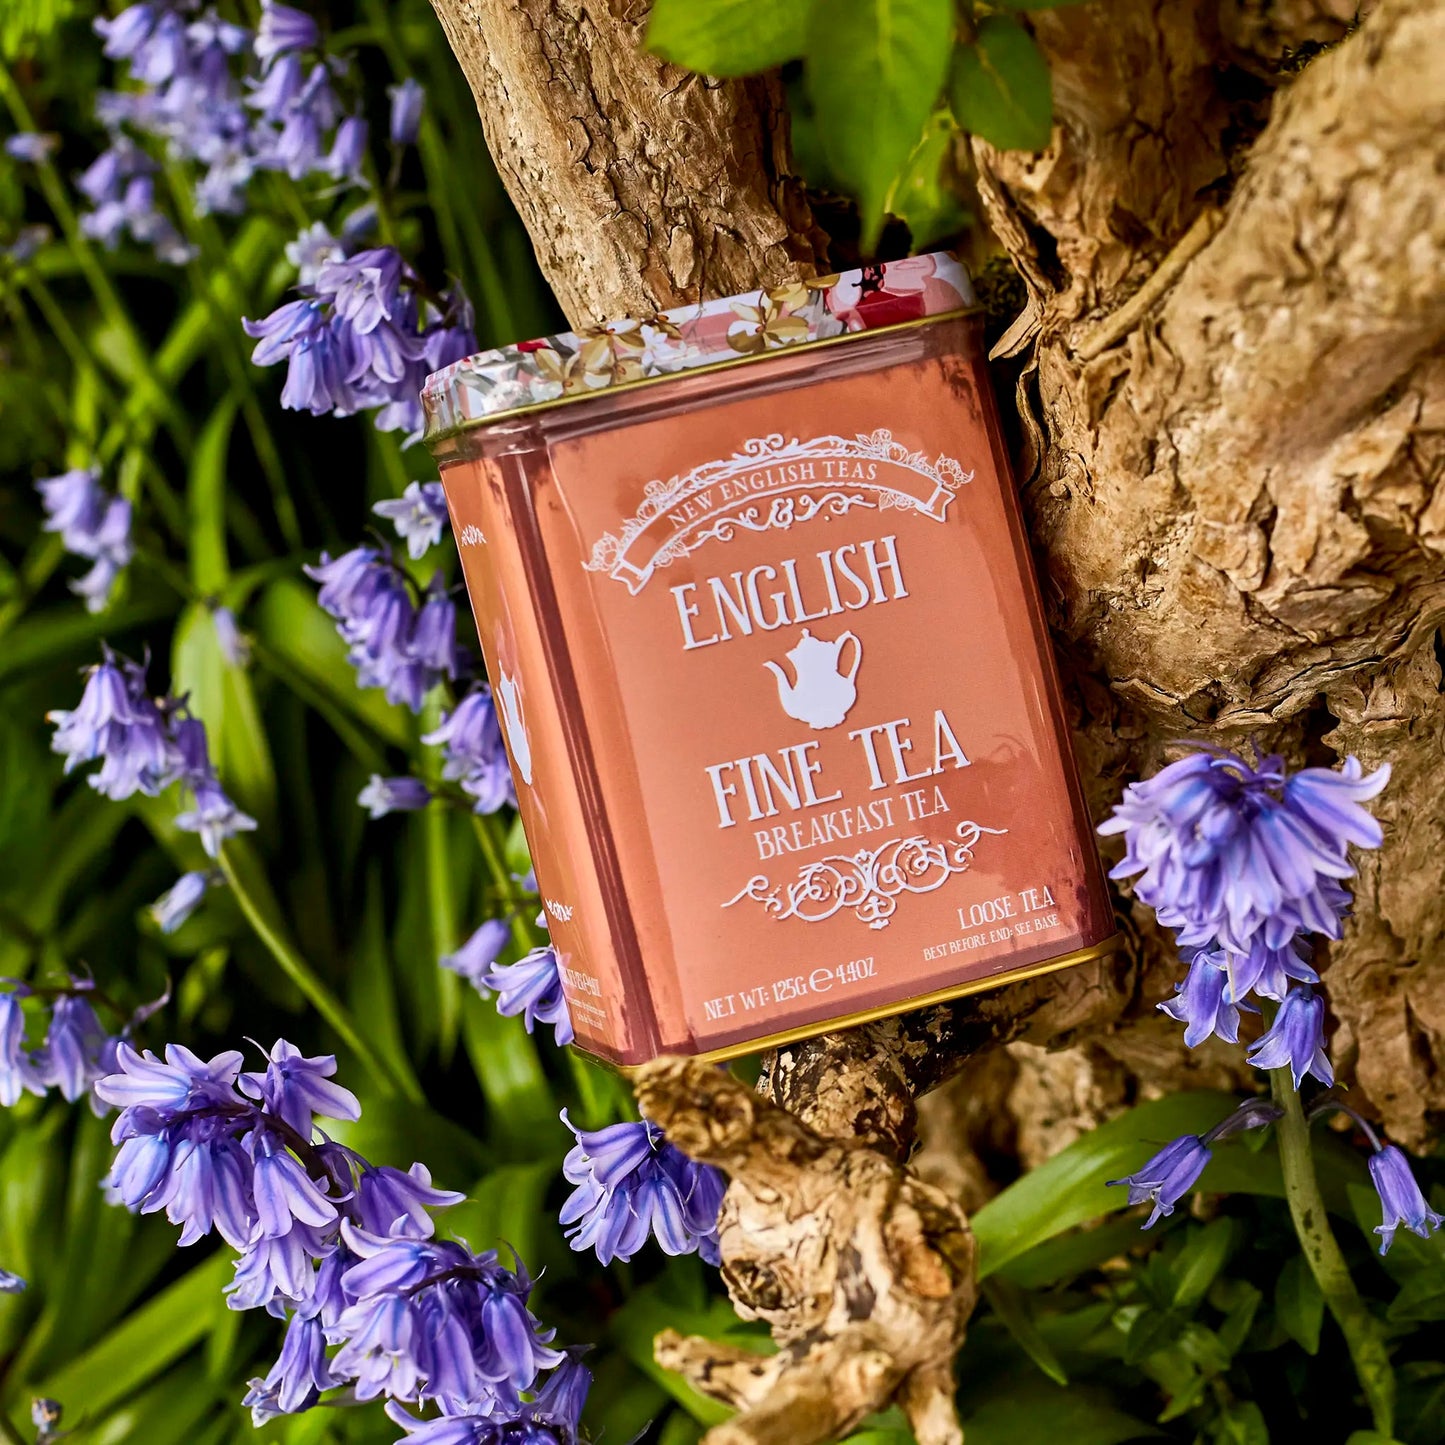 Floral Tea Tin With Loose-Leaf Breakfast Tea Tea Tins New English Teas 